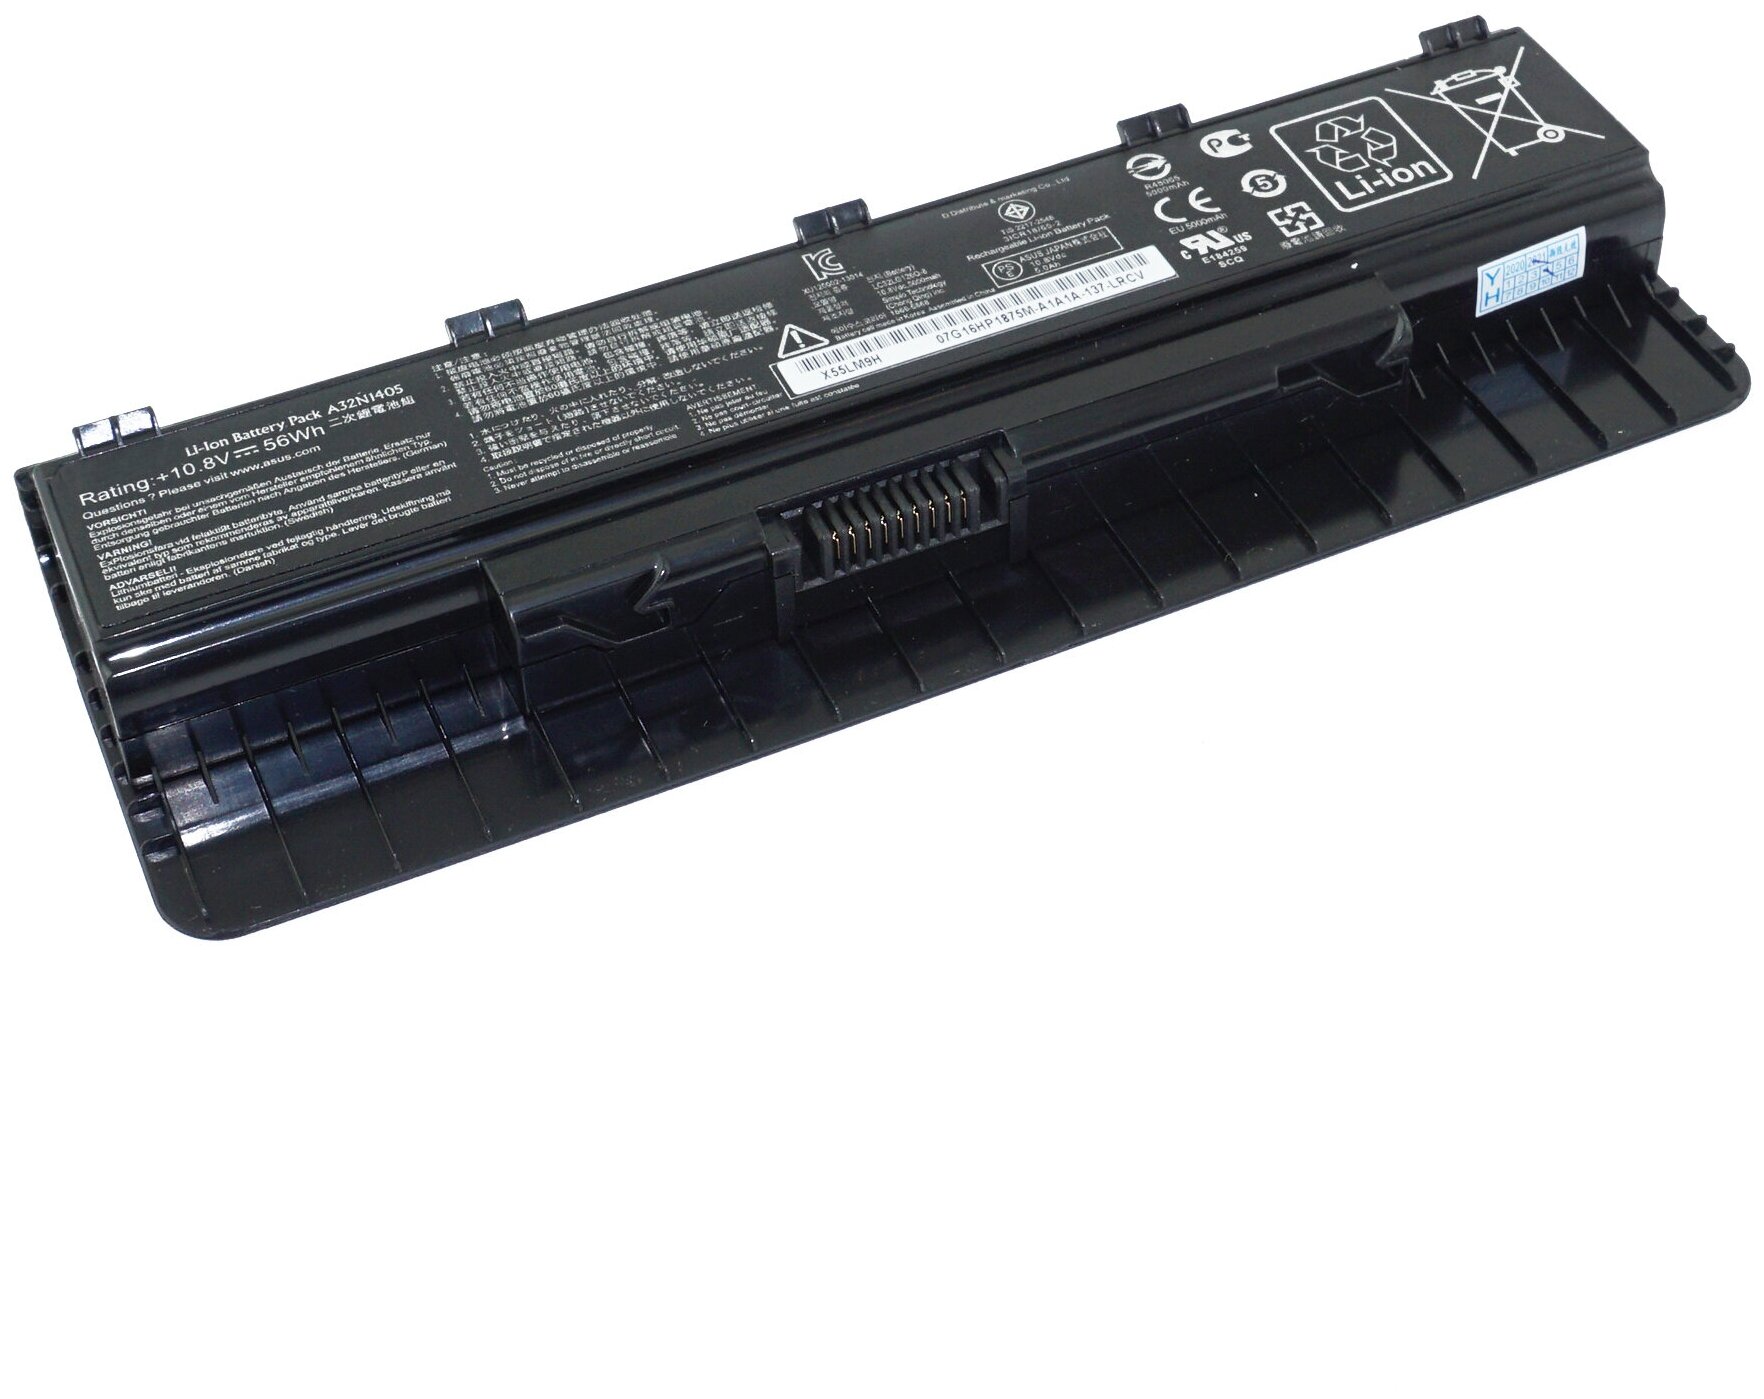 Аккумулятор A32N1405 для Asus G771JW / N551JM (B110-0030000P, A32LI9H)